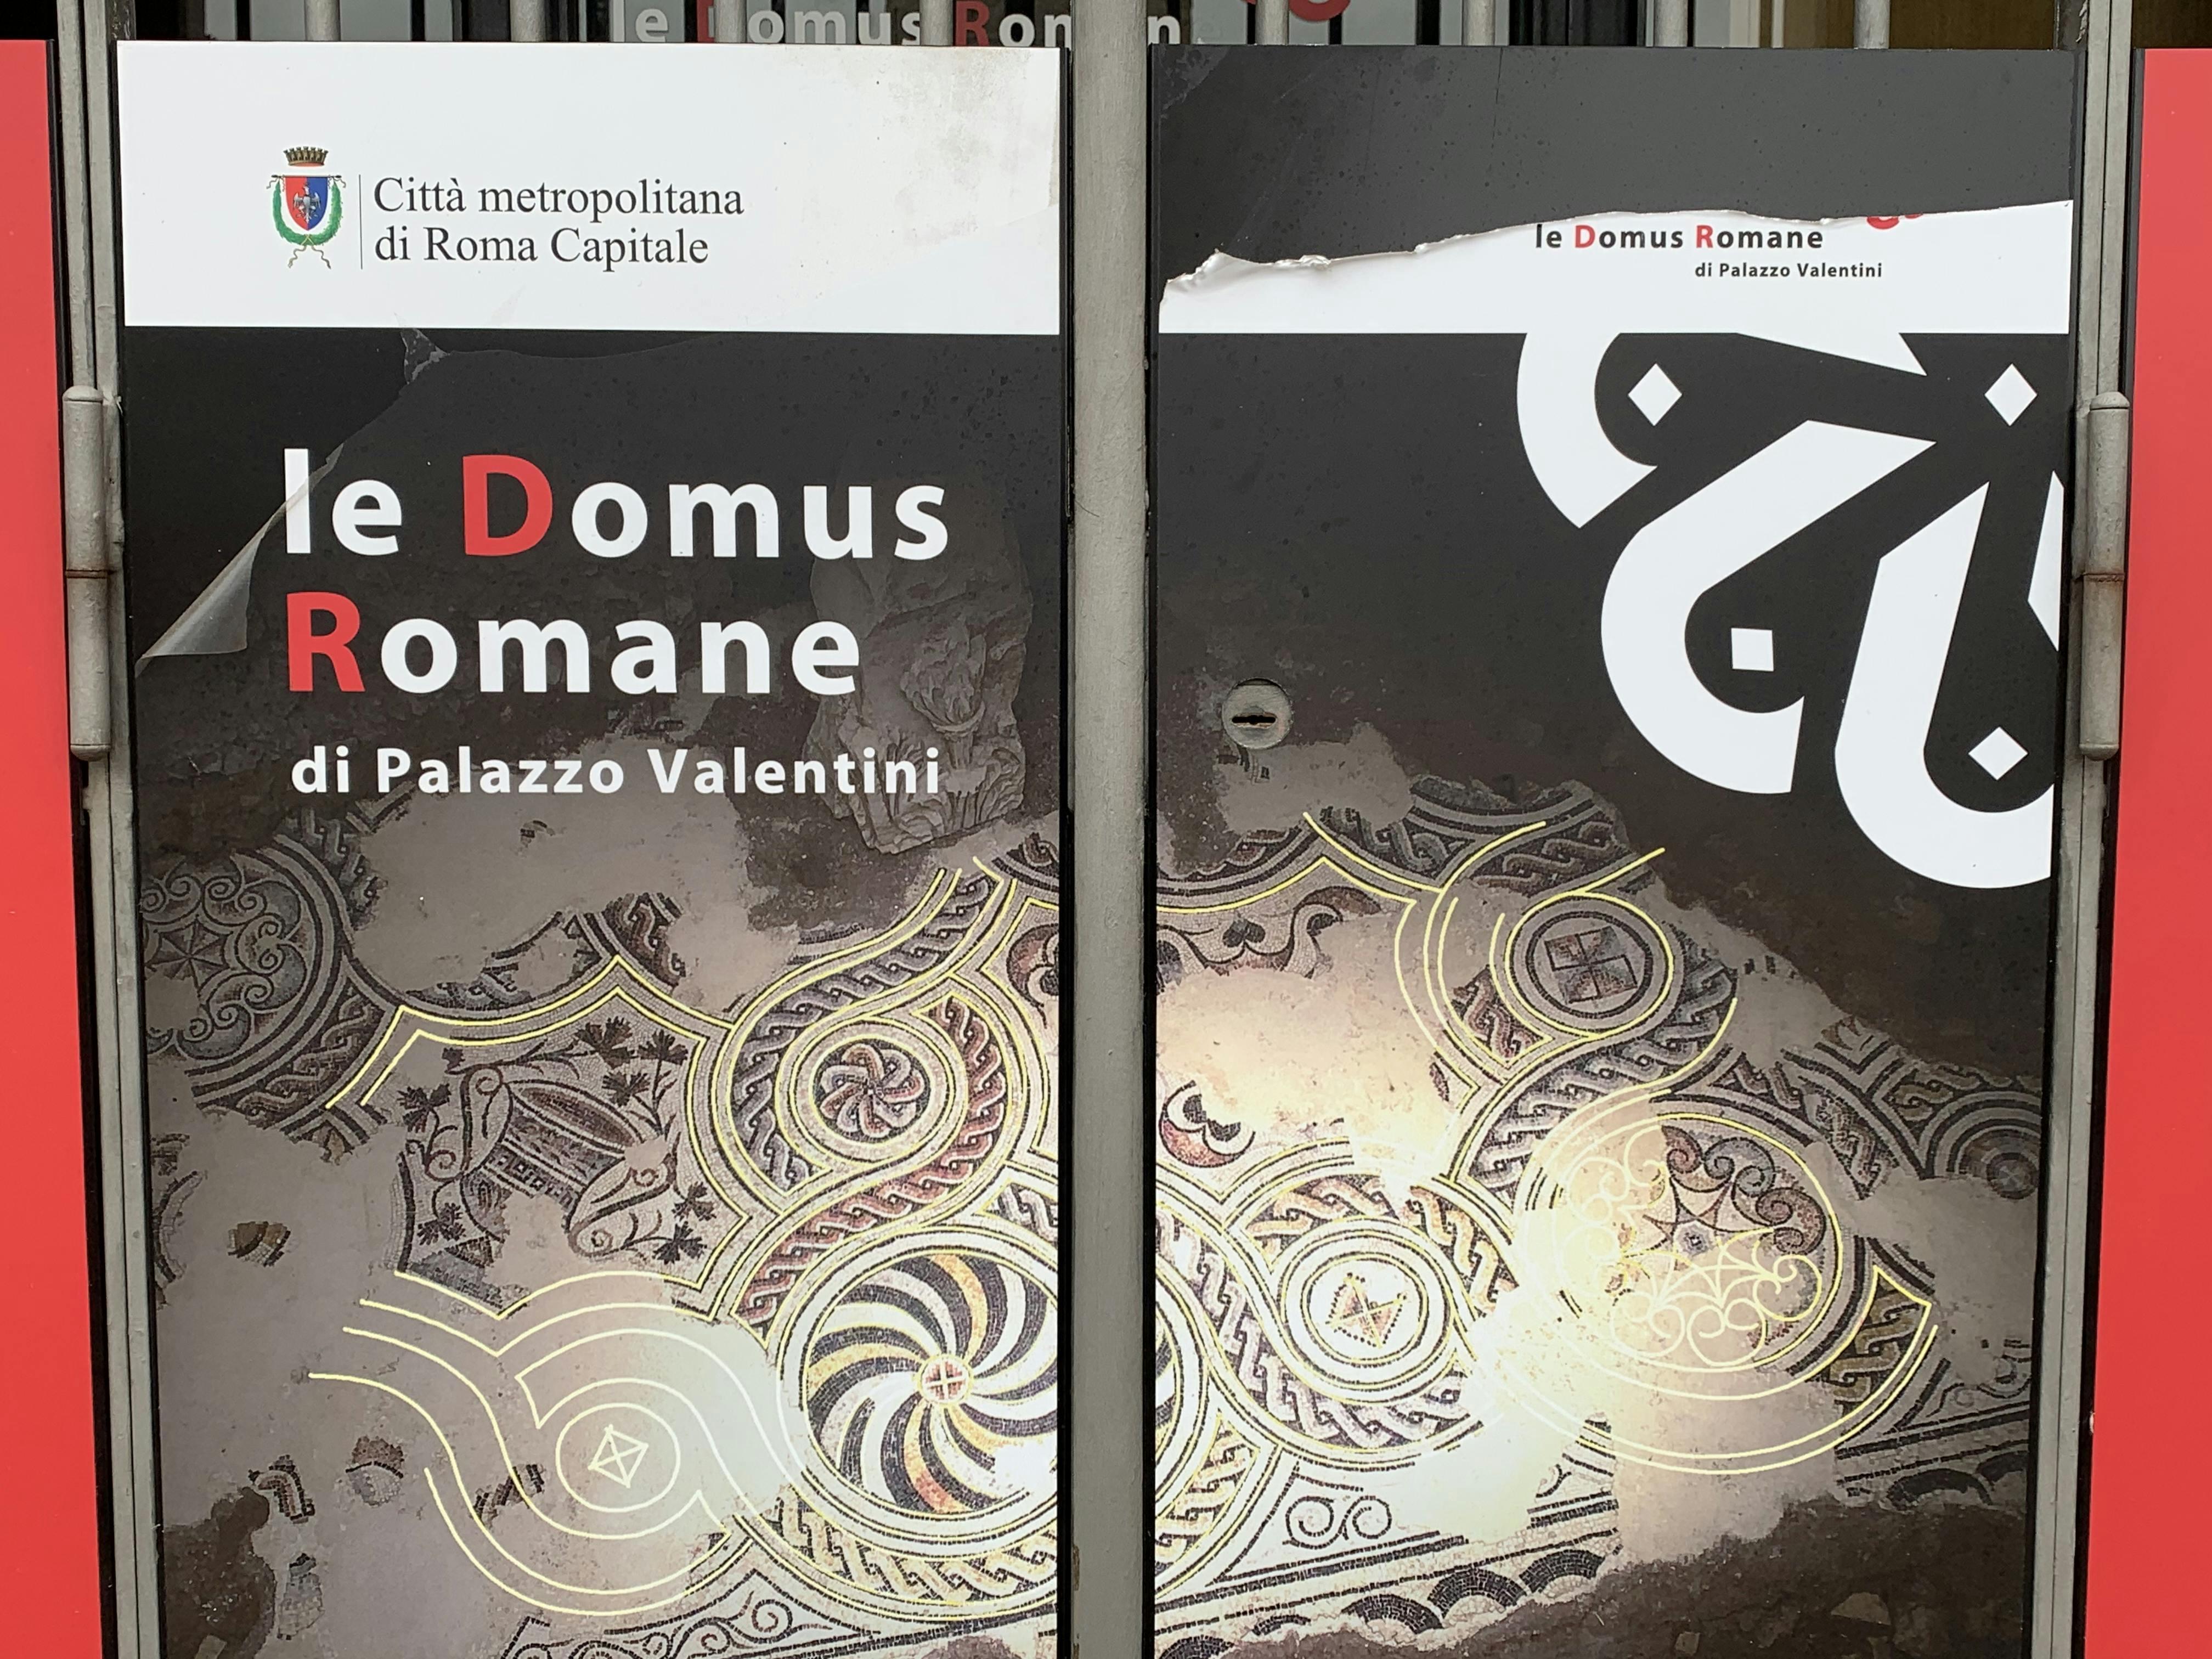 Bilety Roman Domus z Palazzo Valentini z możliwością korzystania z multimediów